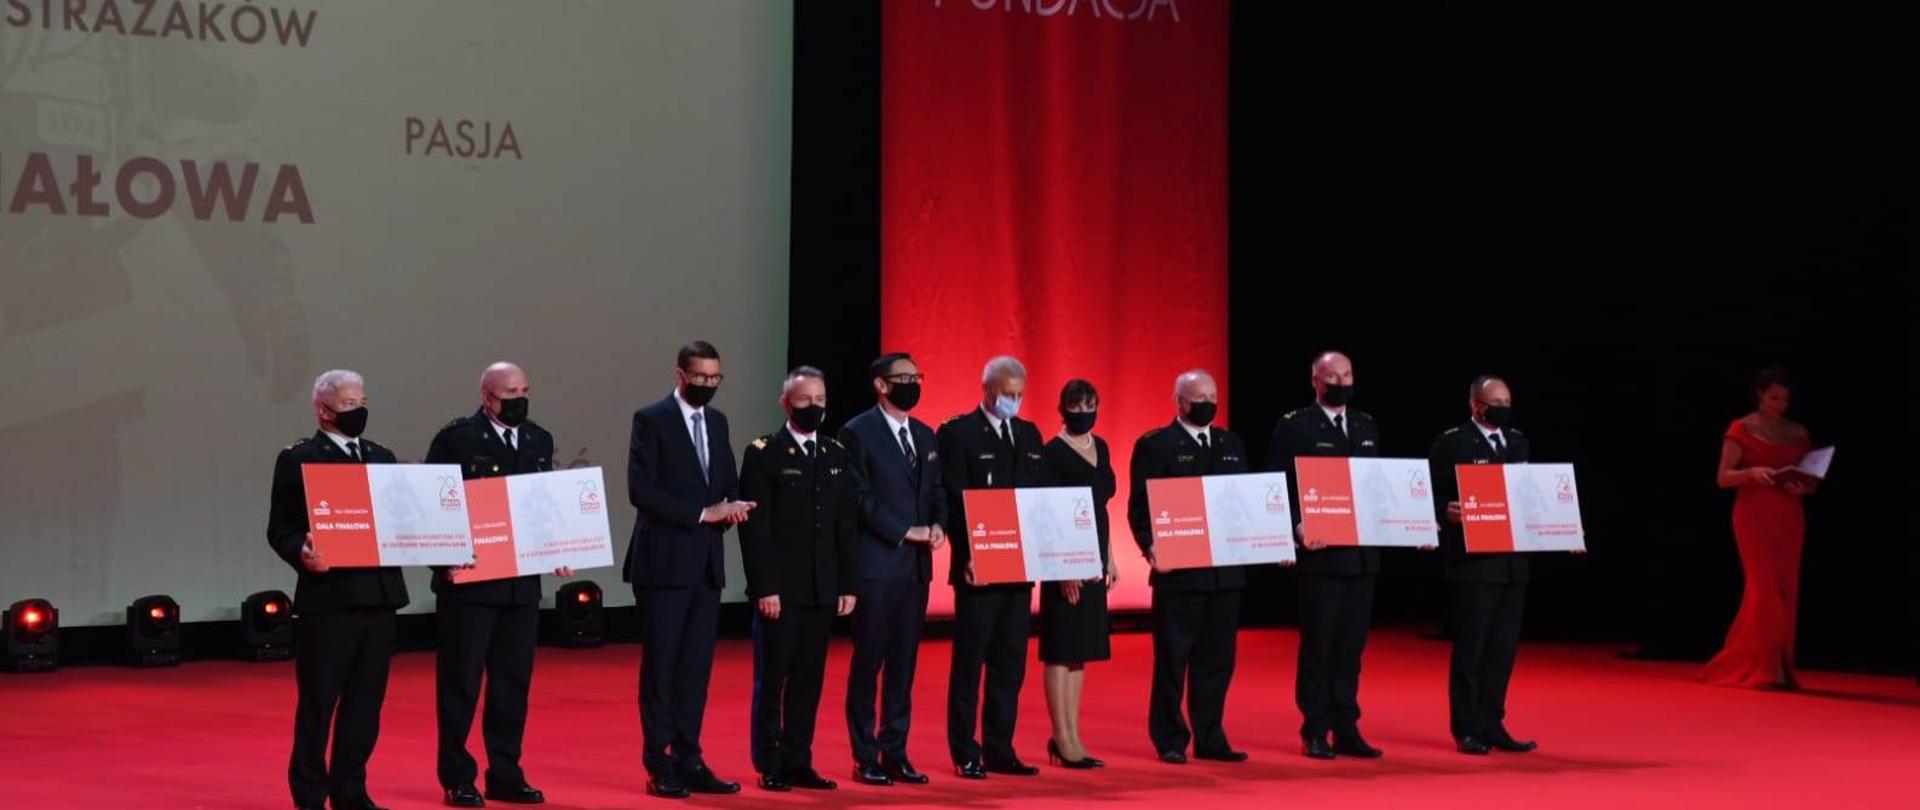 Na scenie 11 uczestników gali, w tym premier, komendant główny , prezes PKN ORLEN, 6 osób trzyma symboliczne czeki